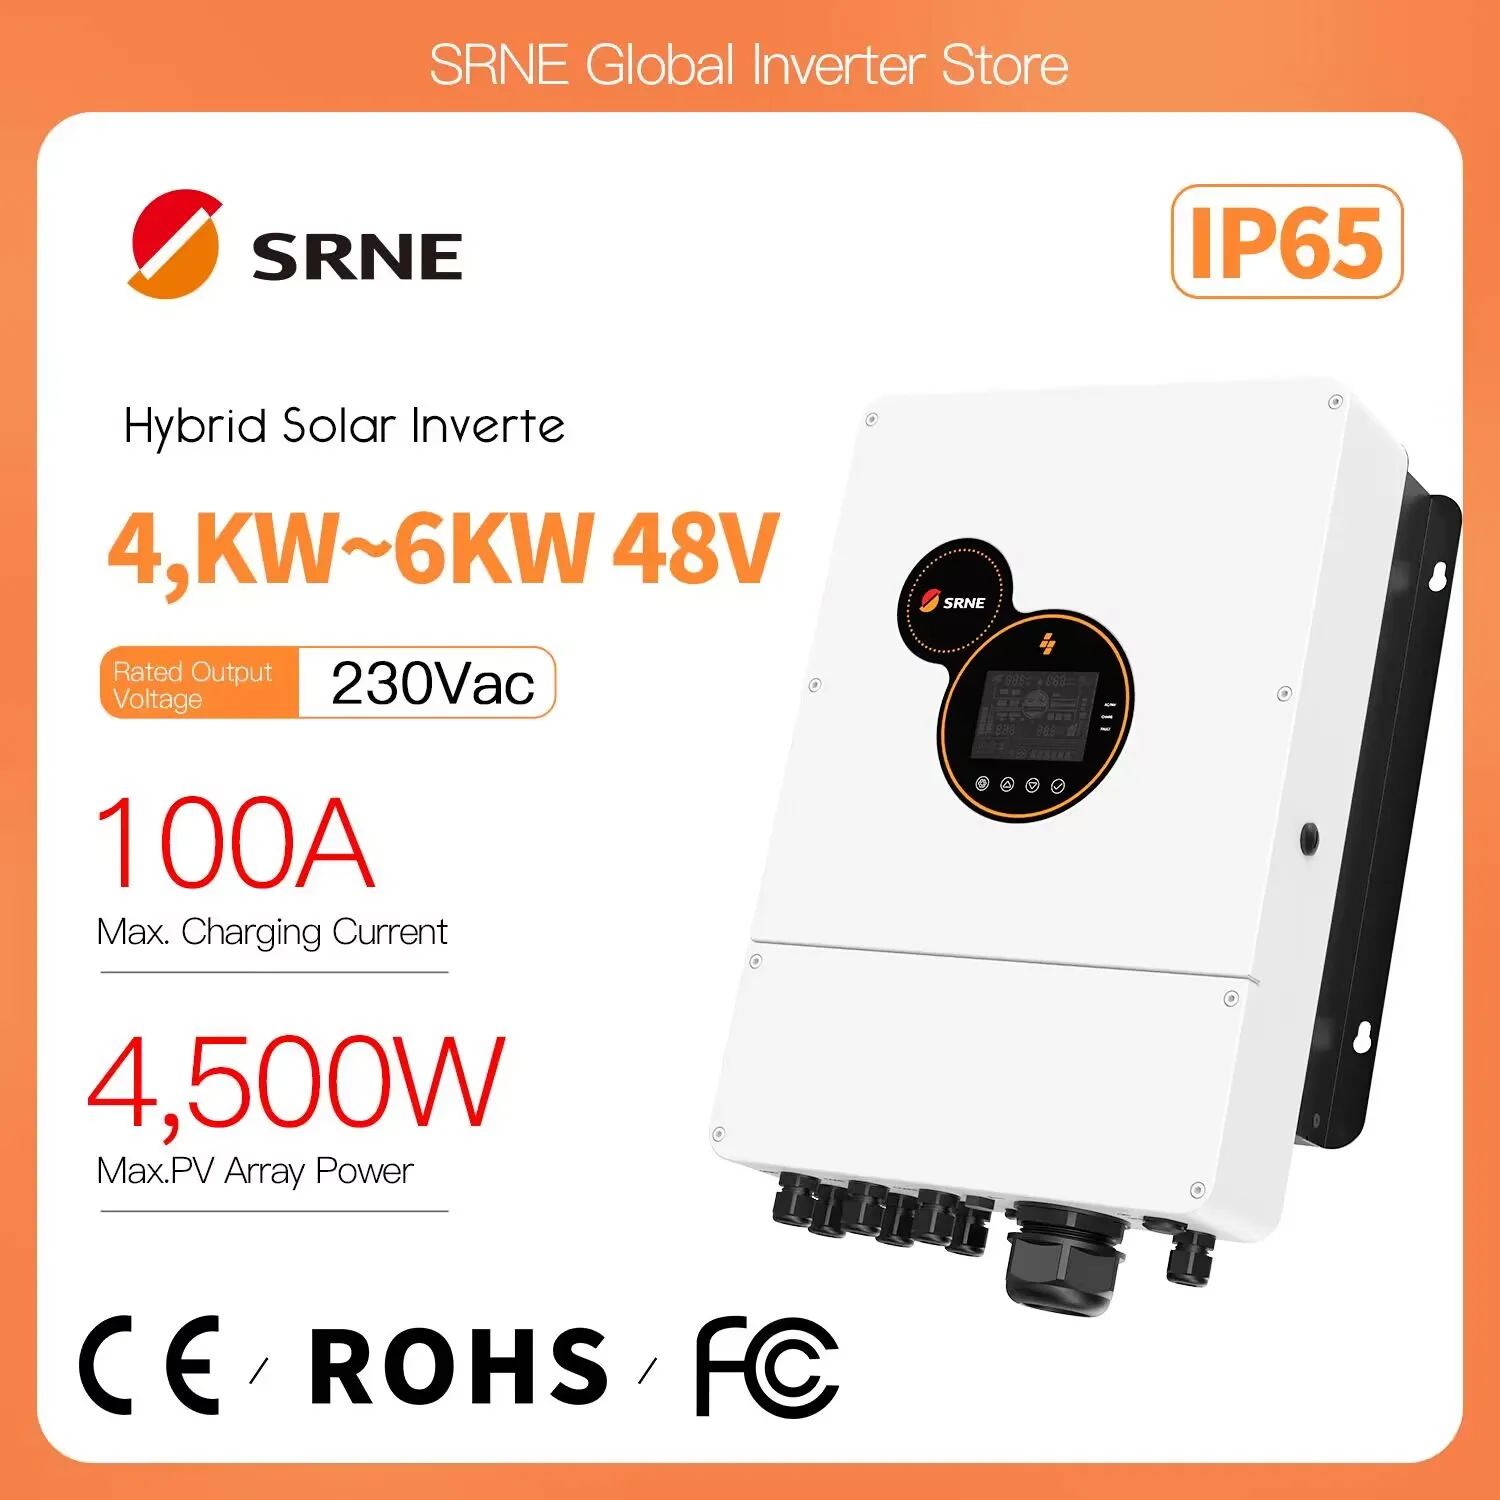 SRNE висока честота на хибриден инвертор с мощност 230/240 В променлив ток с мощност 5 kw, вграден MPPT-заряд от слънчева енергия